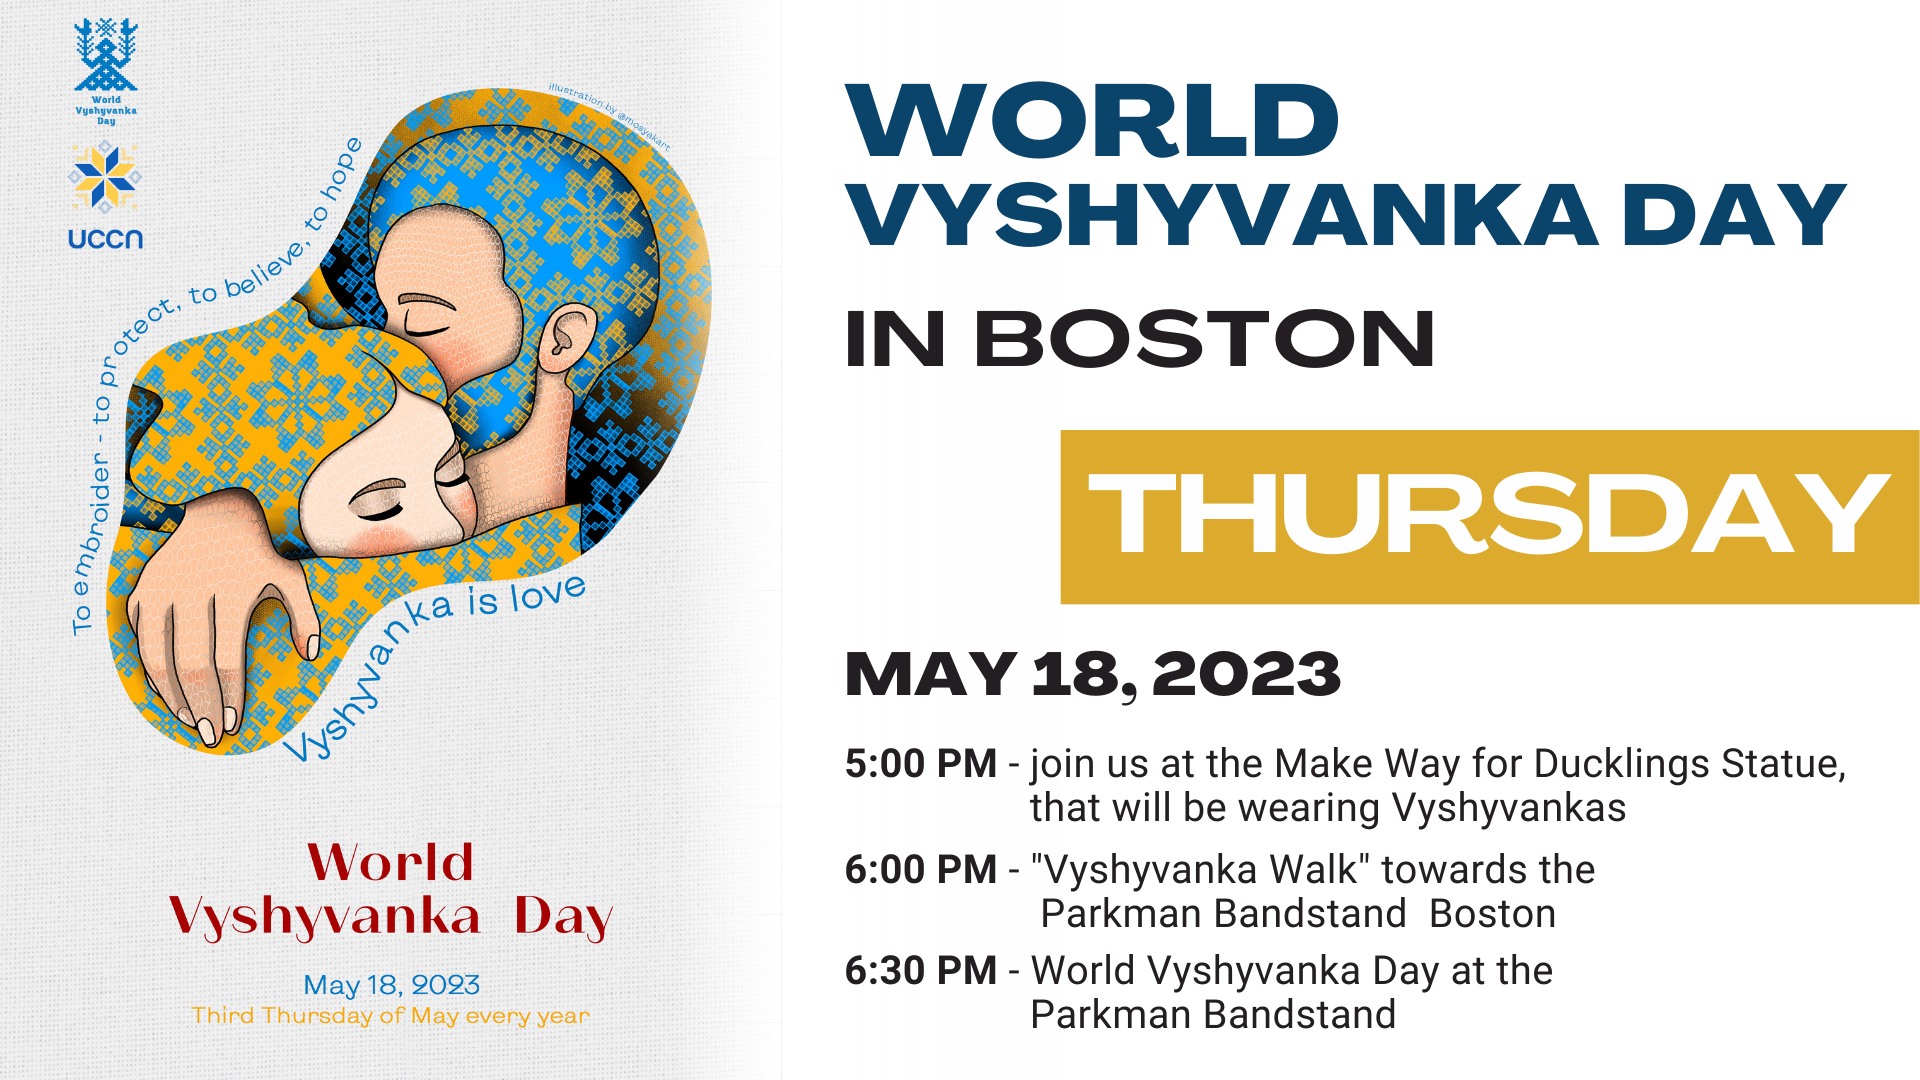 World Vyshyvanka Day in Boston